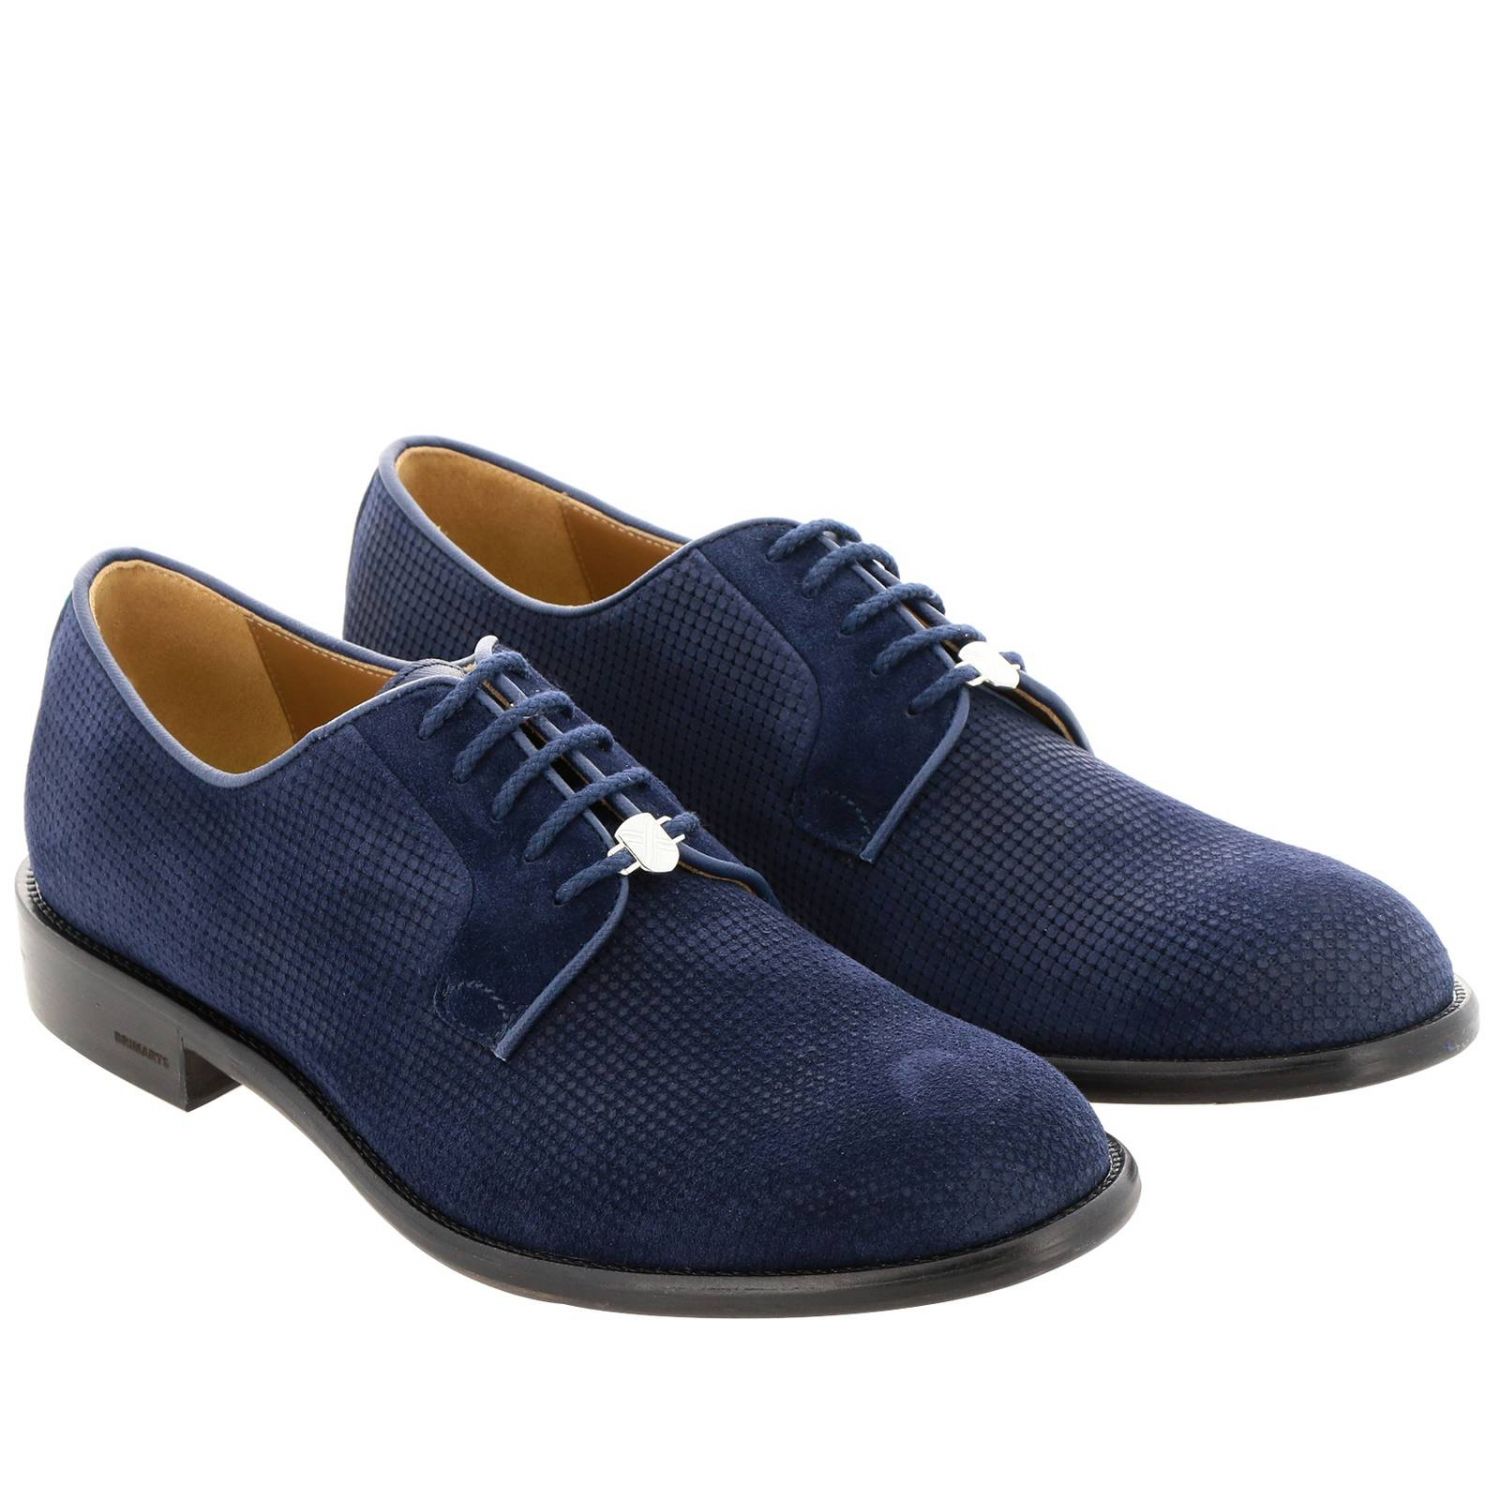 Brimarts Outlet: Shoes men - Blue | Brogue Shoes Brimarts 318790 1858 ...